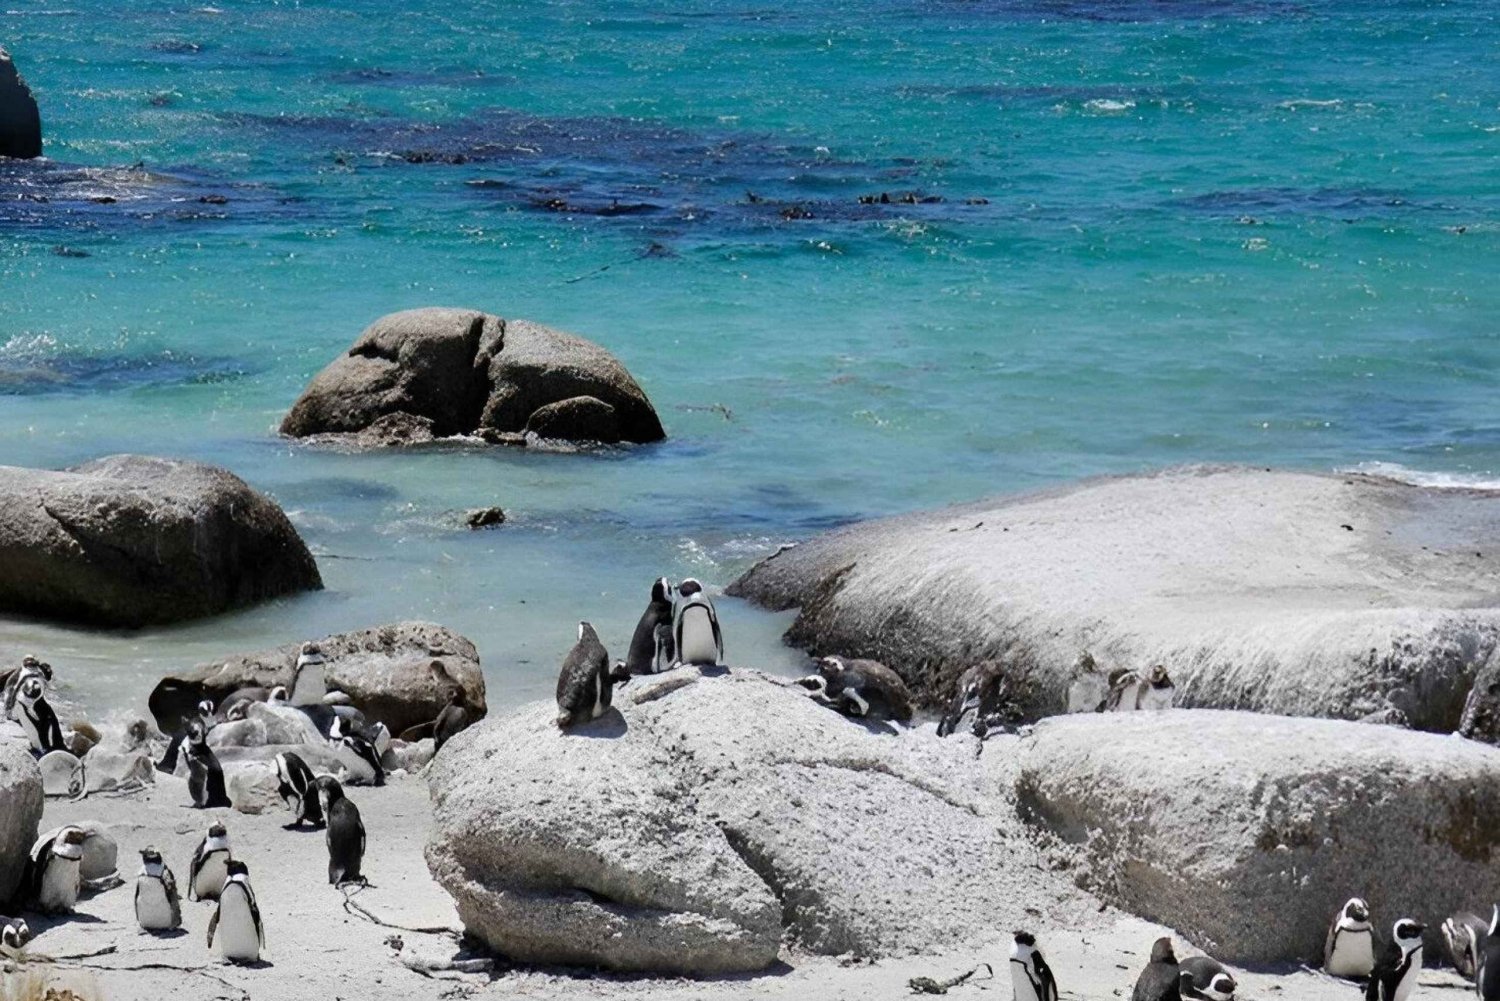 Da Cidade do Cabo: Tour guiado pelo Cabo da Boa Esperança e pelos pinguins